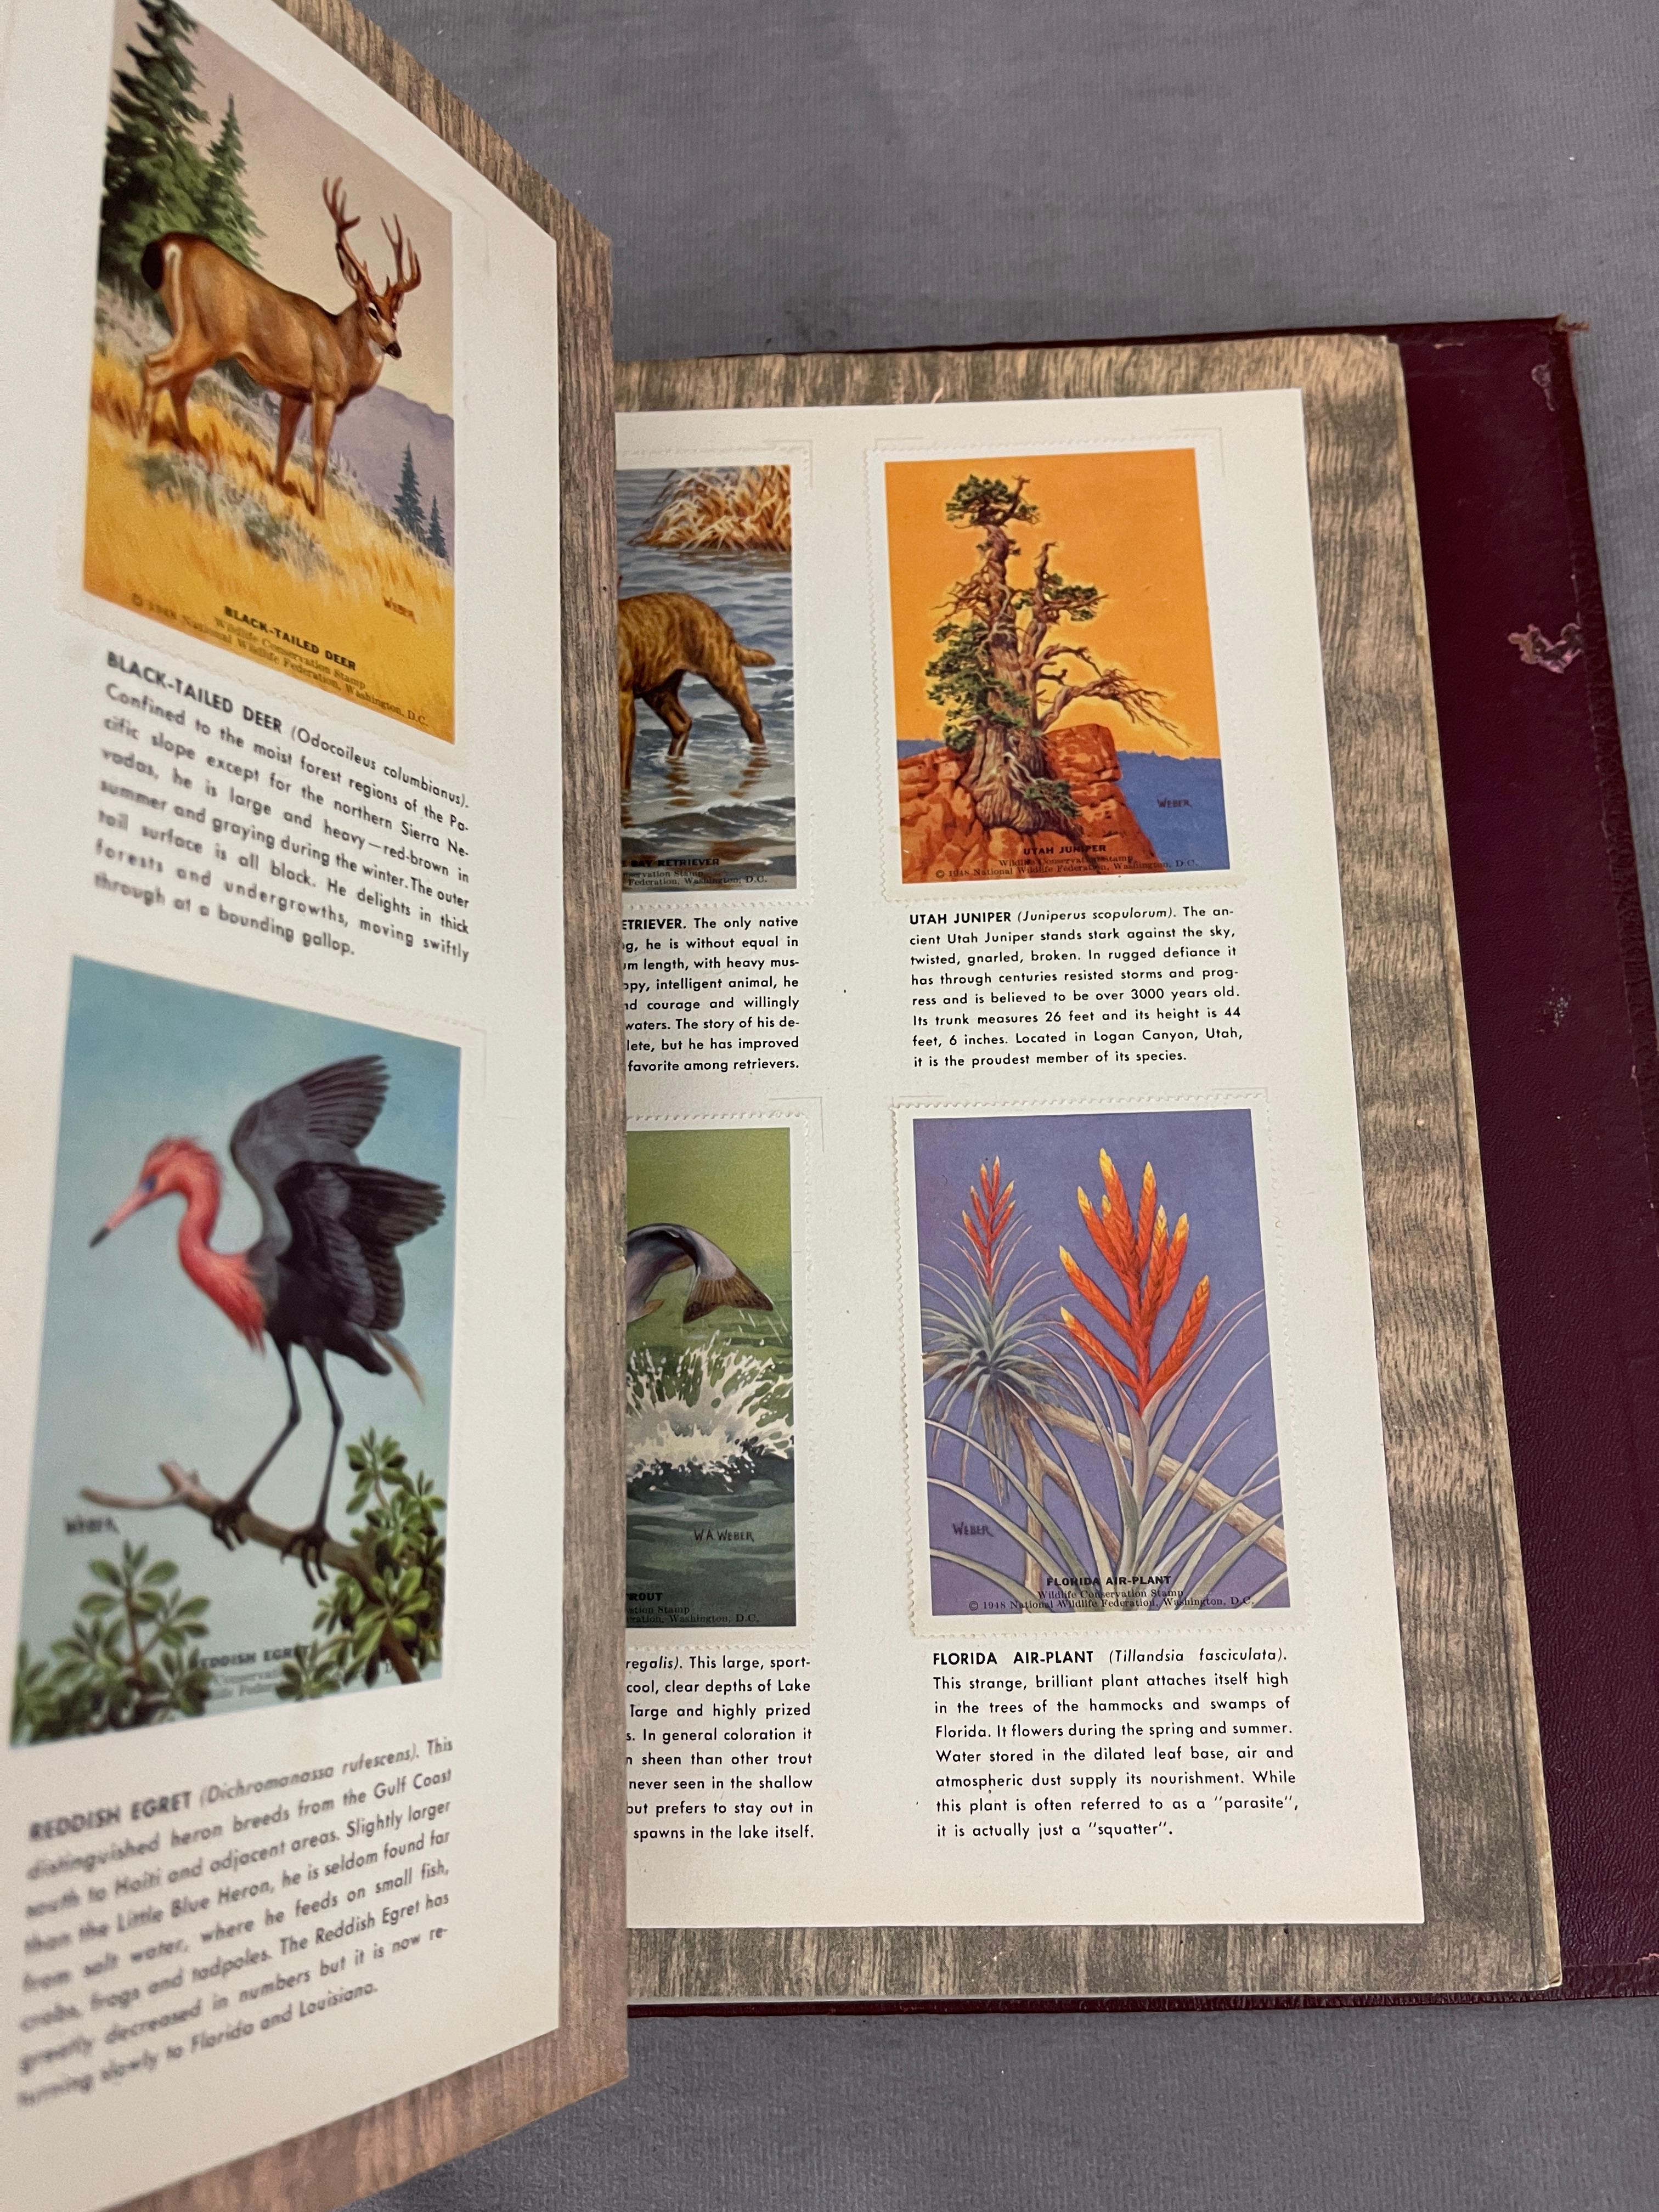 National Wildlife Federation Wildlide Stamp Album